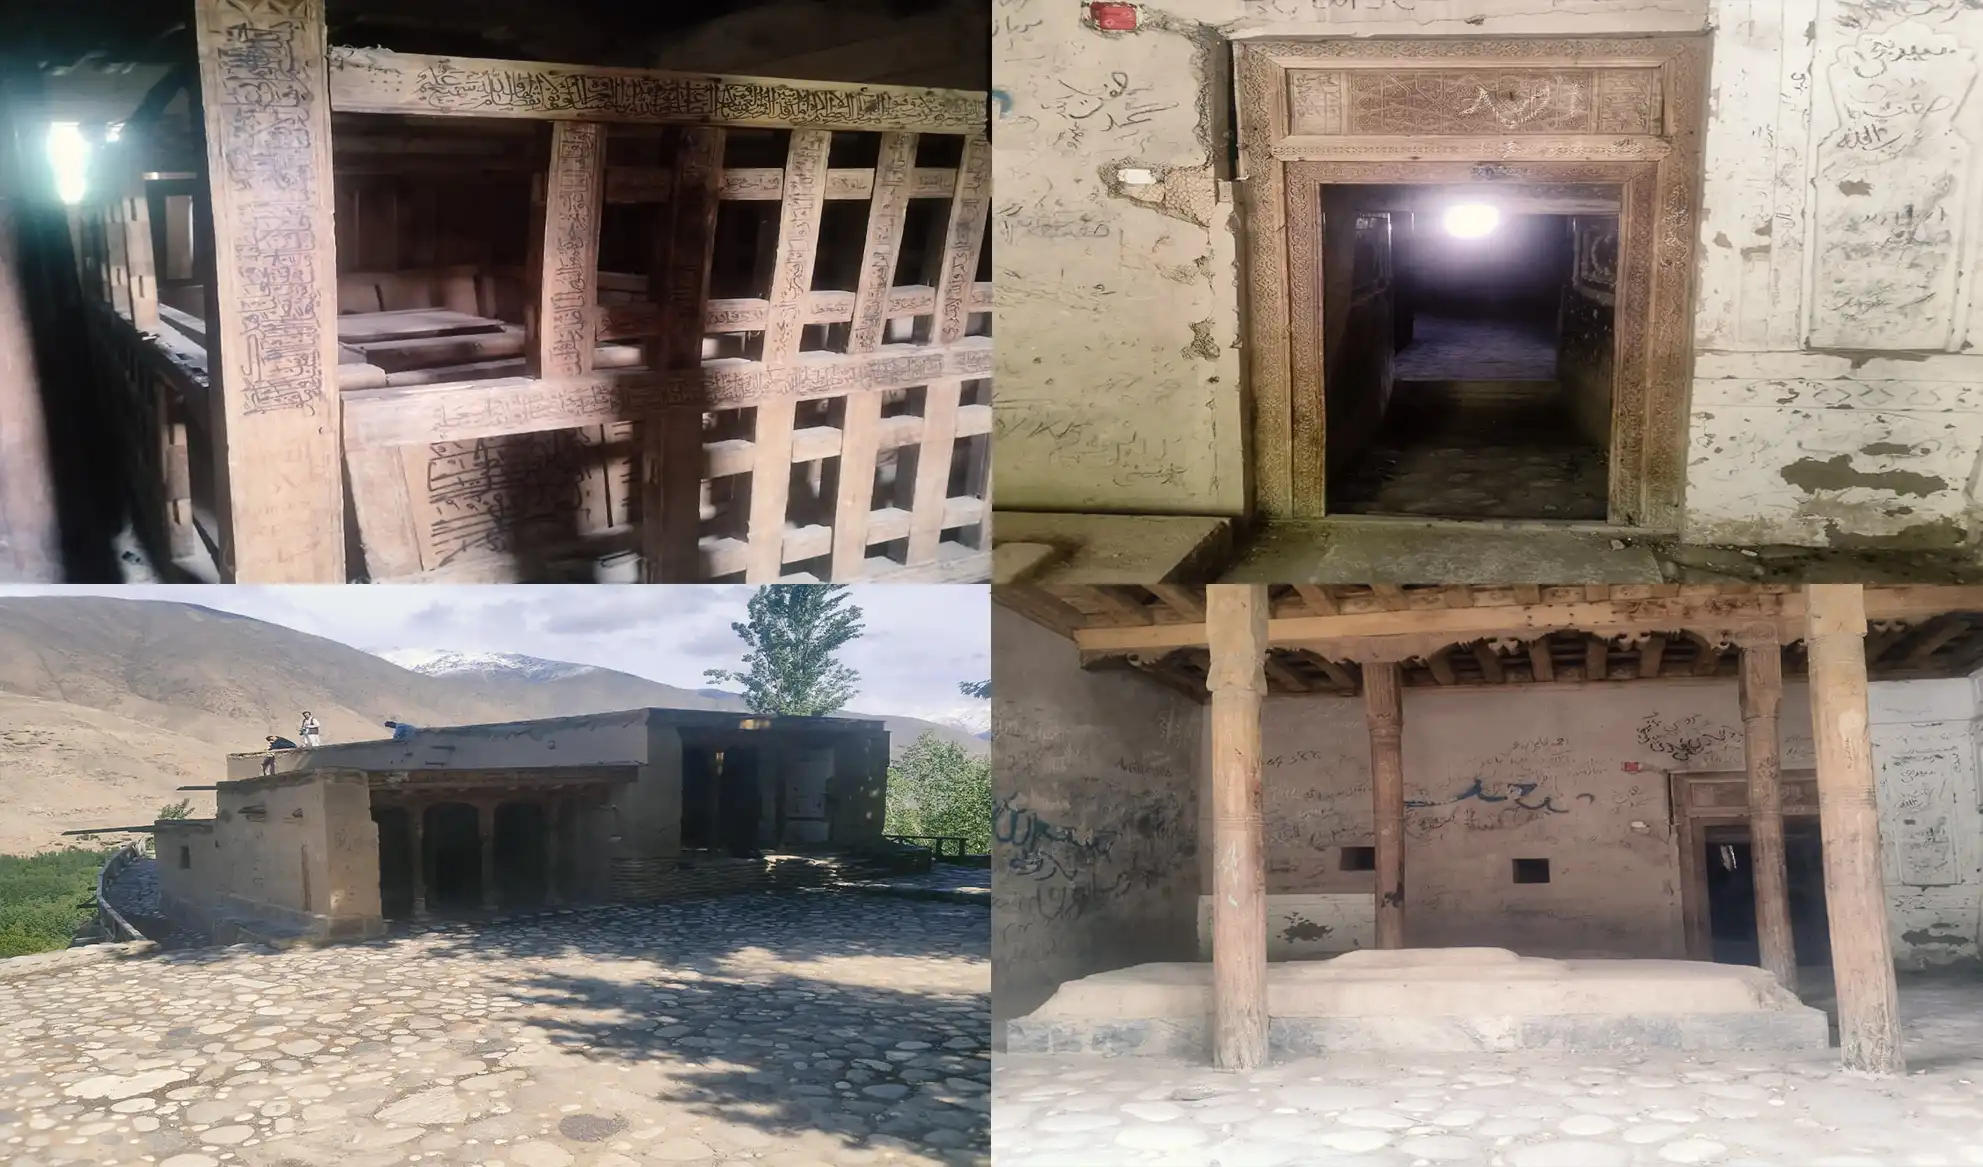 Badakhshan heritage sites damaged due to war, disasters